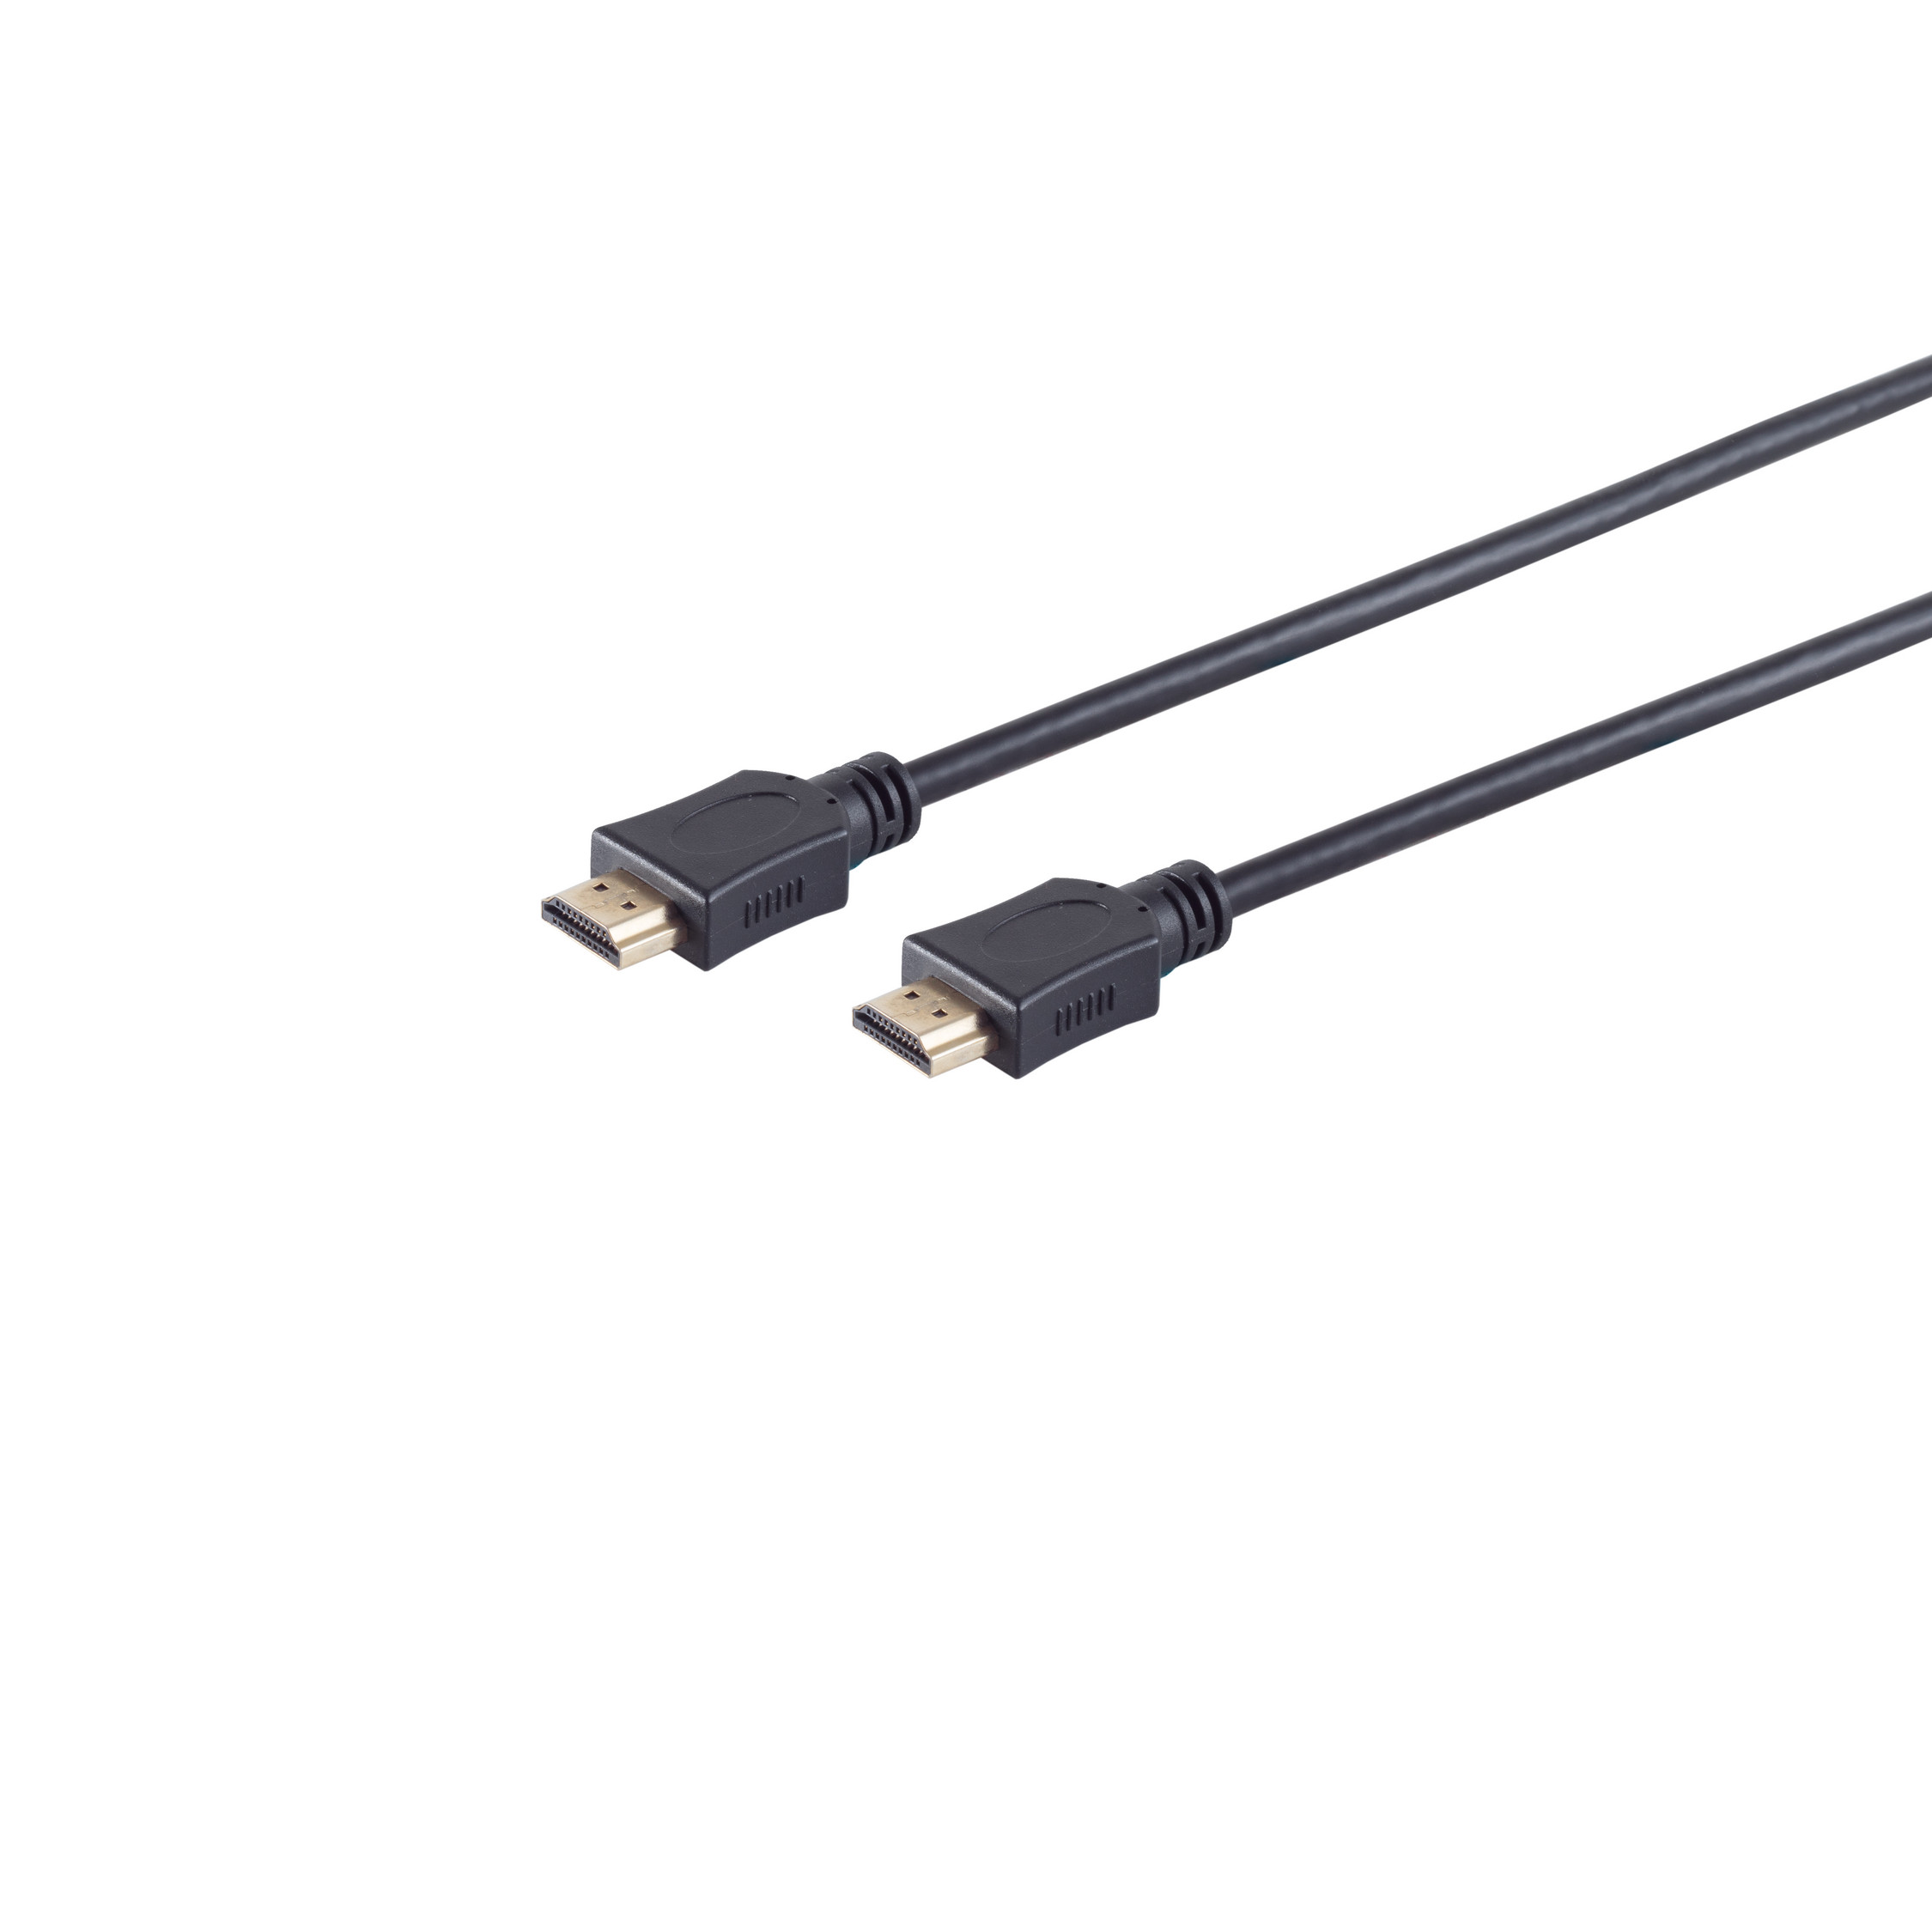 S/CONN CONNECTIVITY Kabel HDMI HEAC 20m / MAXIMUM A-Stecker HDMI verg. A-Stecker HDMI